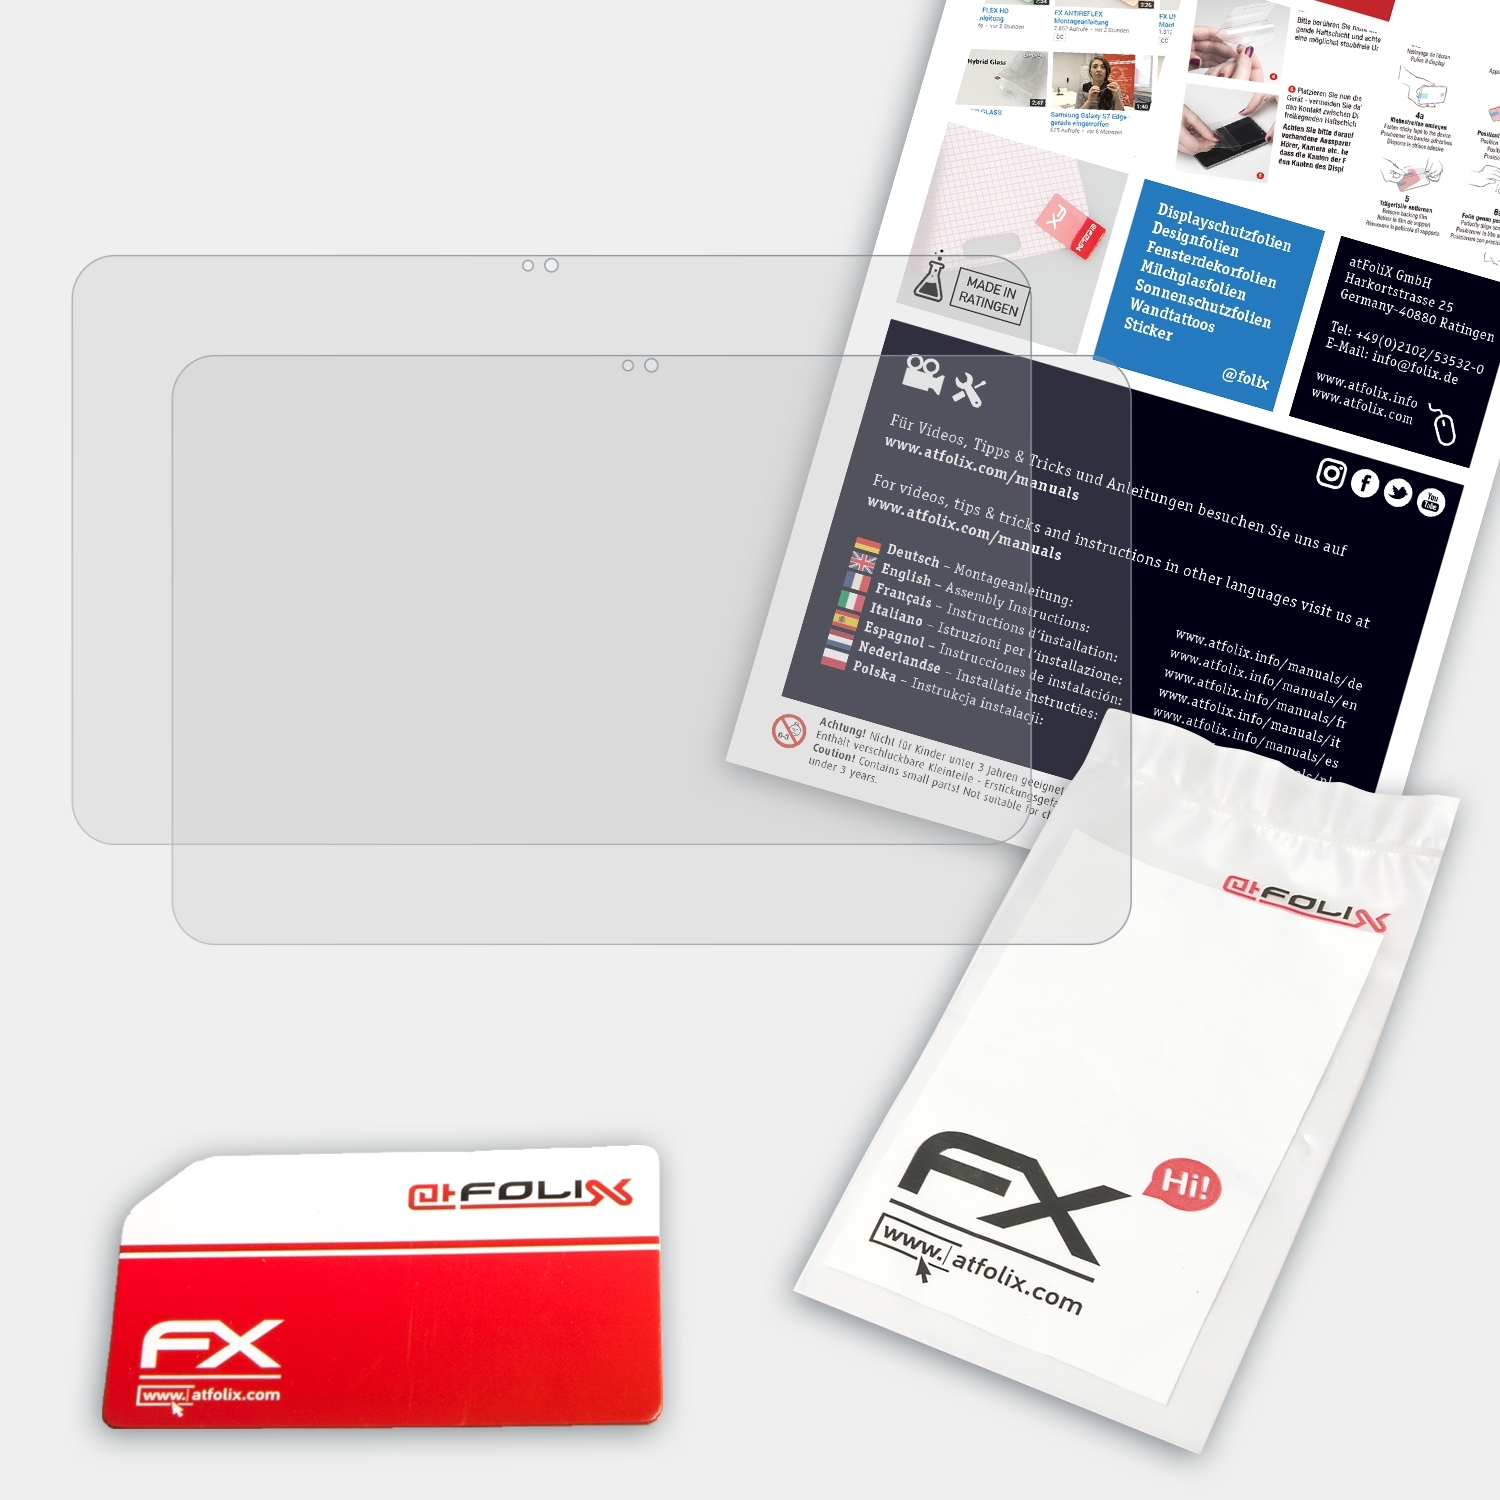 ATFOLIX 2x HP Pavilion FX-Antireflex Displayschutz(für x360 13,3 (2014))